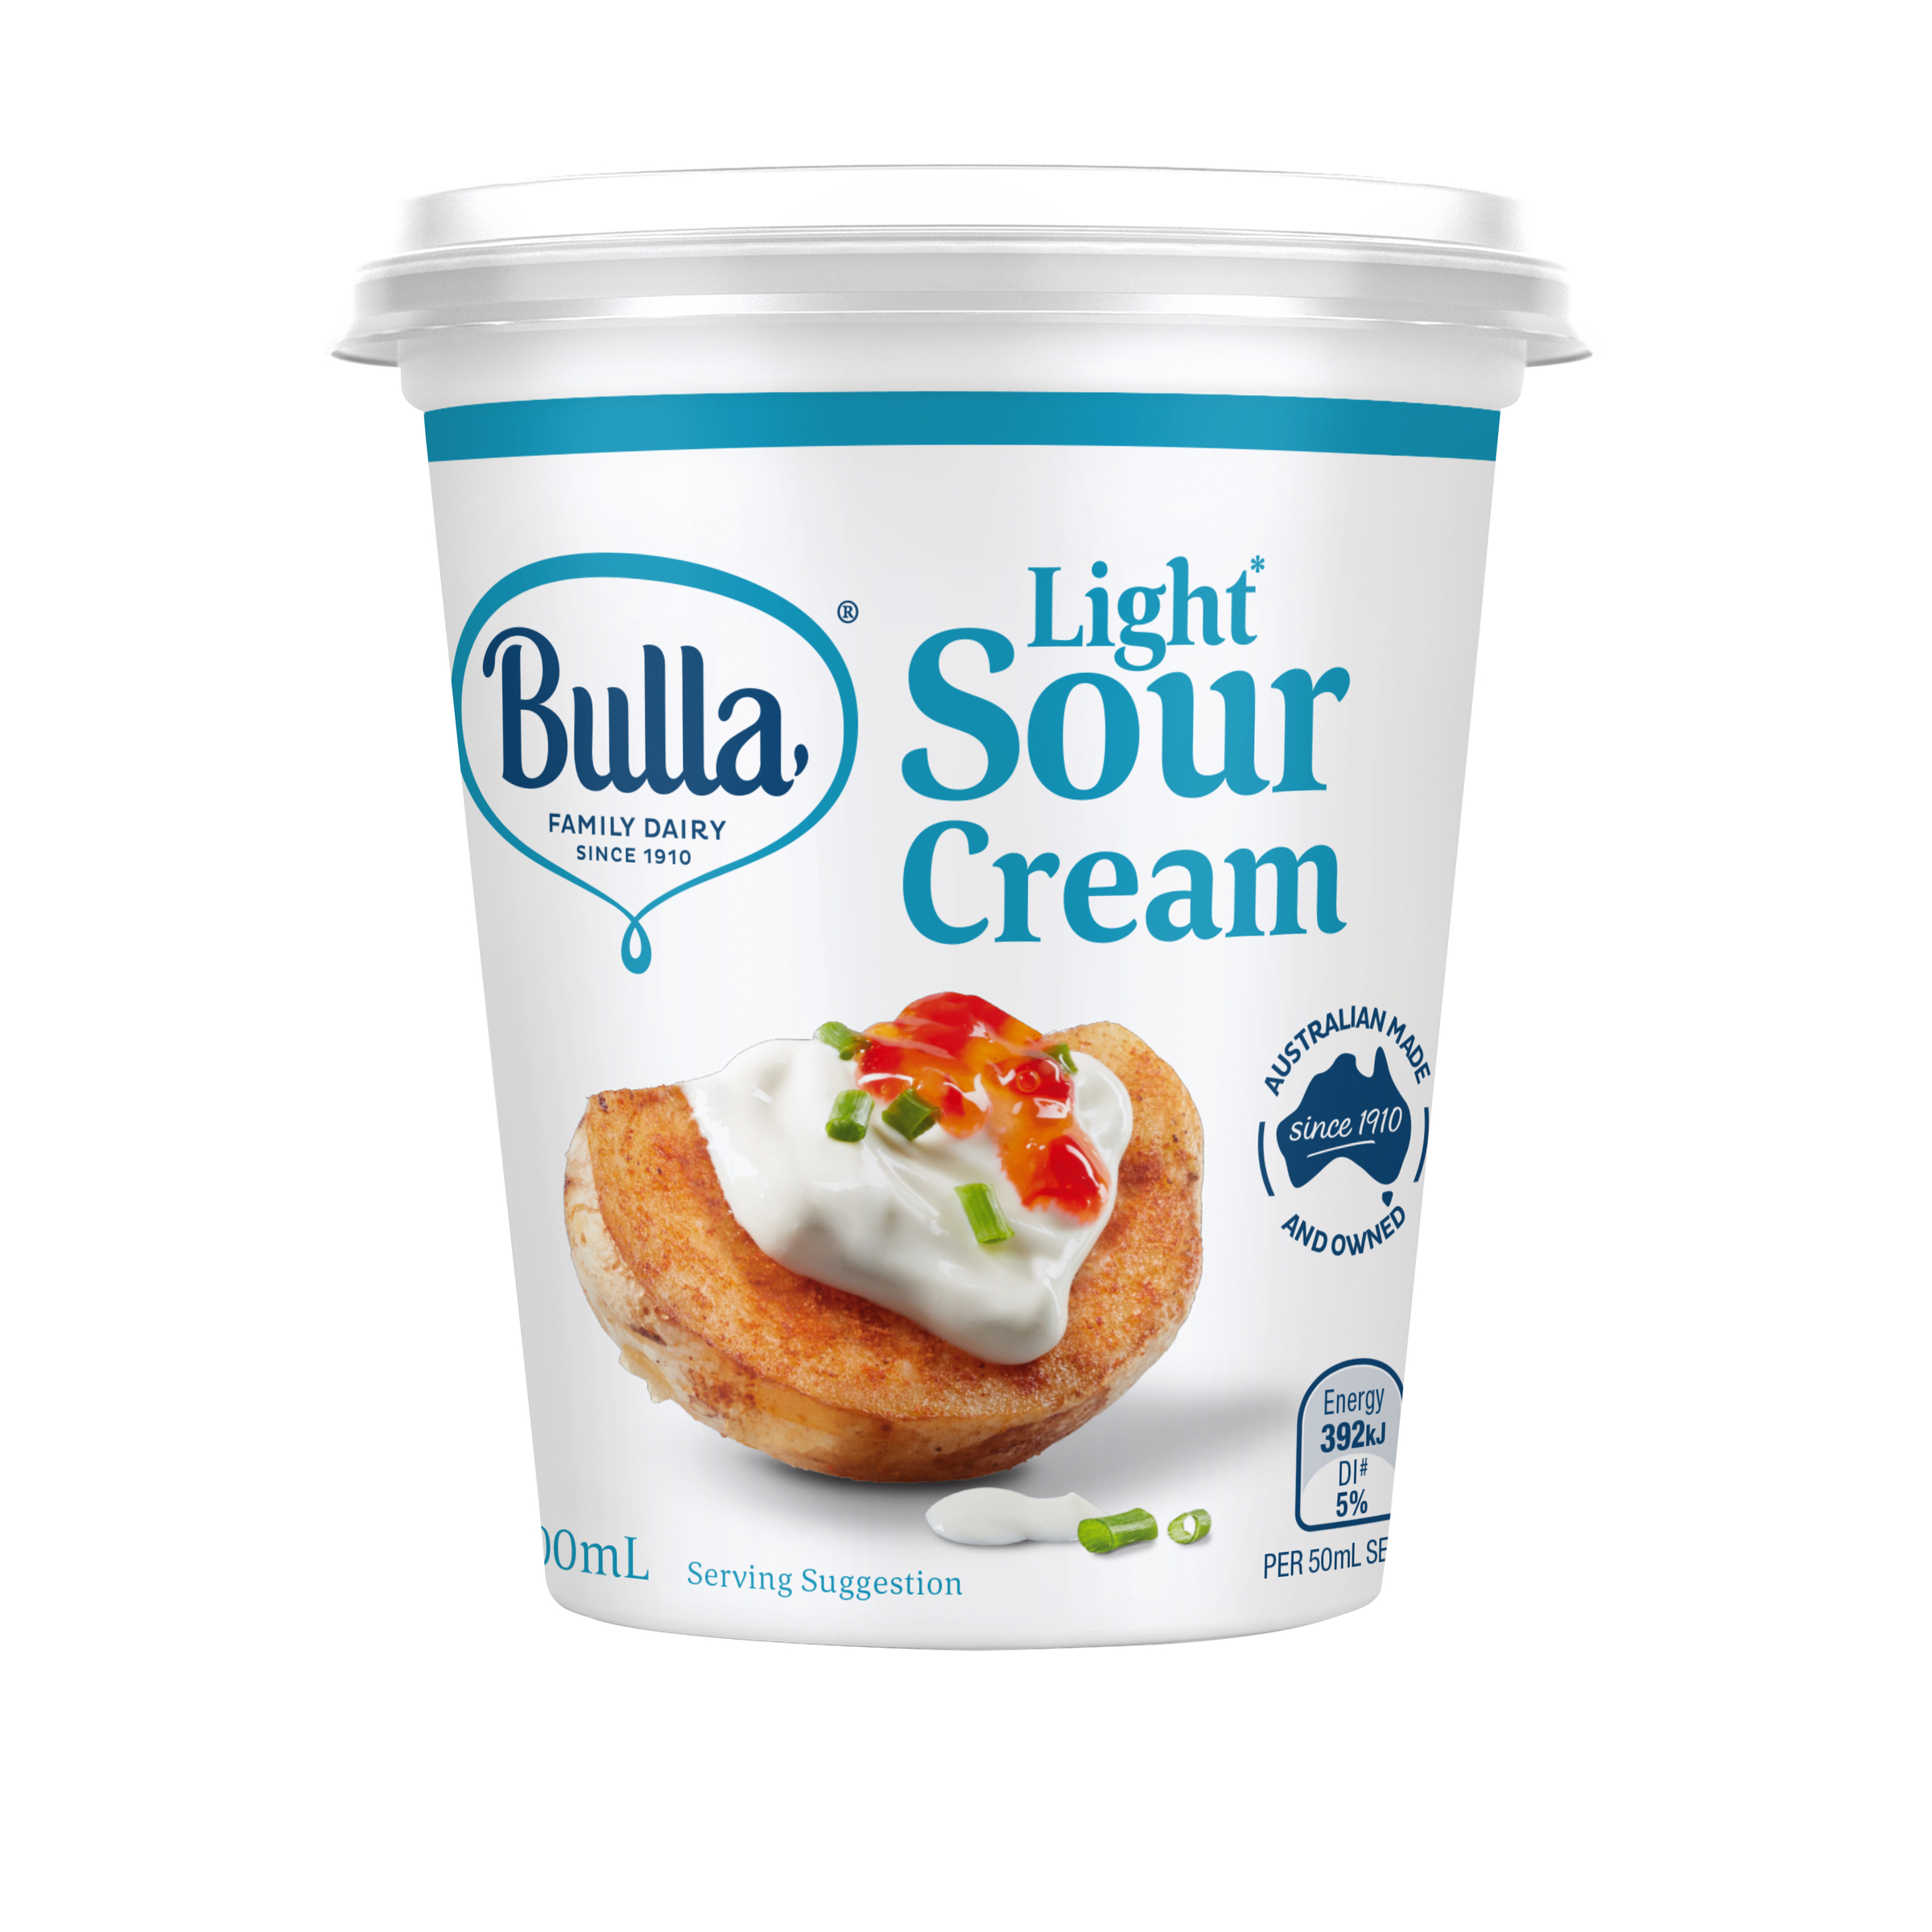 Bulla Light Sour Cream 200mL